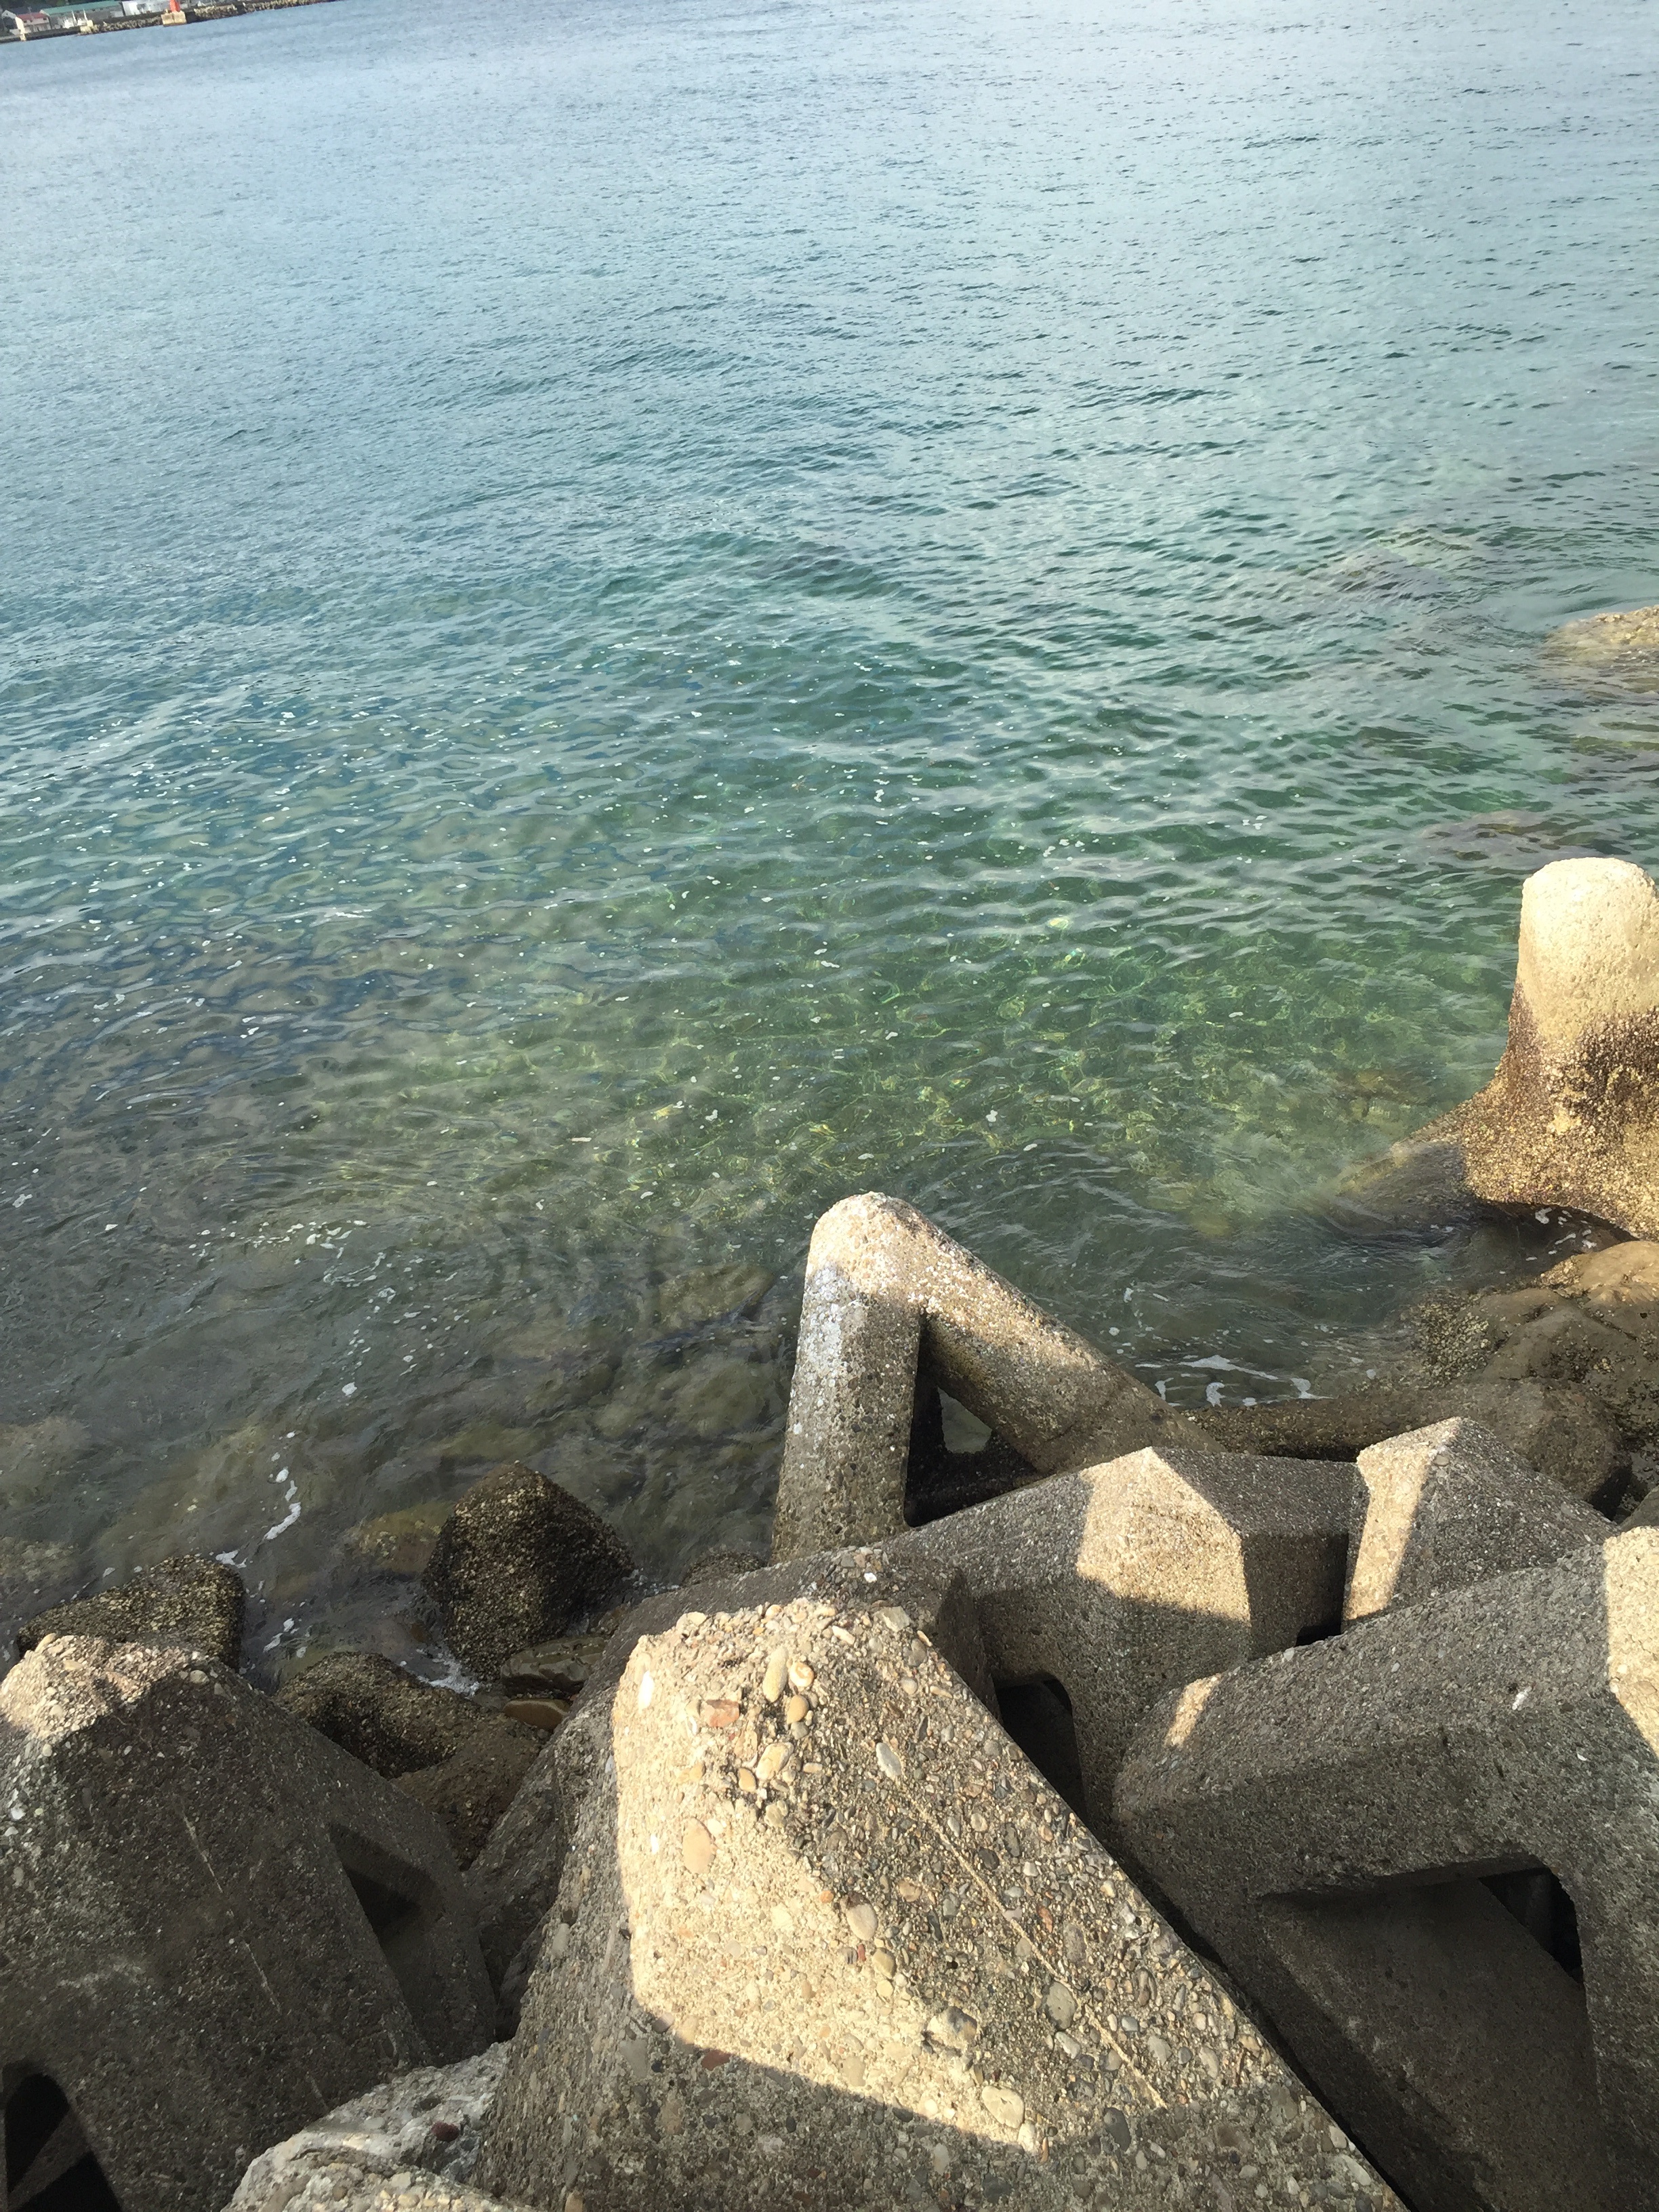 産湯漁港の釣り場紹介、和歌山中紀の濁りや水潮に強い中紀エギングにオススメの漁港